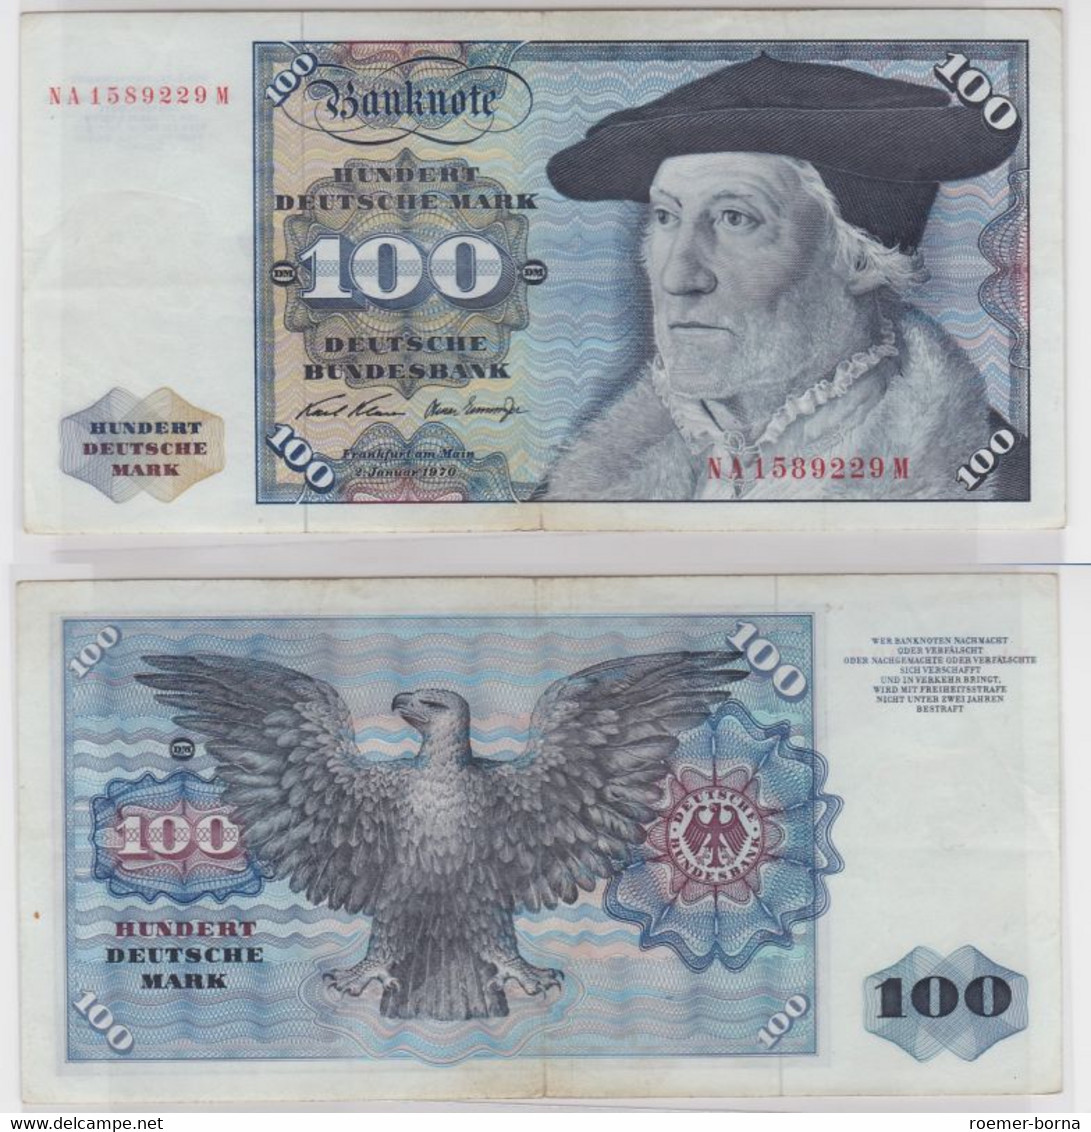 T147177 Banknote 100 DM Deutsche Mark Ro 273a Schein 2.Jan. 1970 KN NA 1589229 M - 100 DM